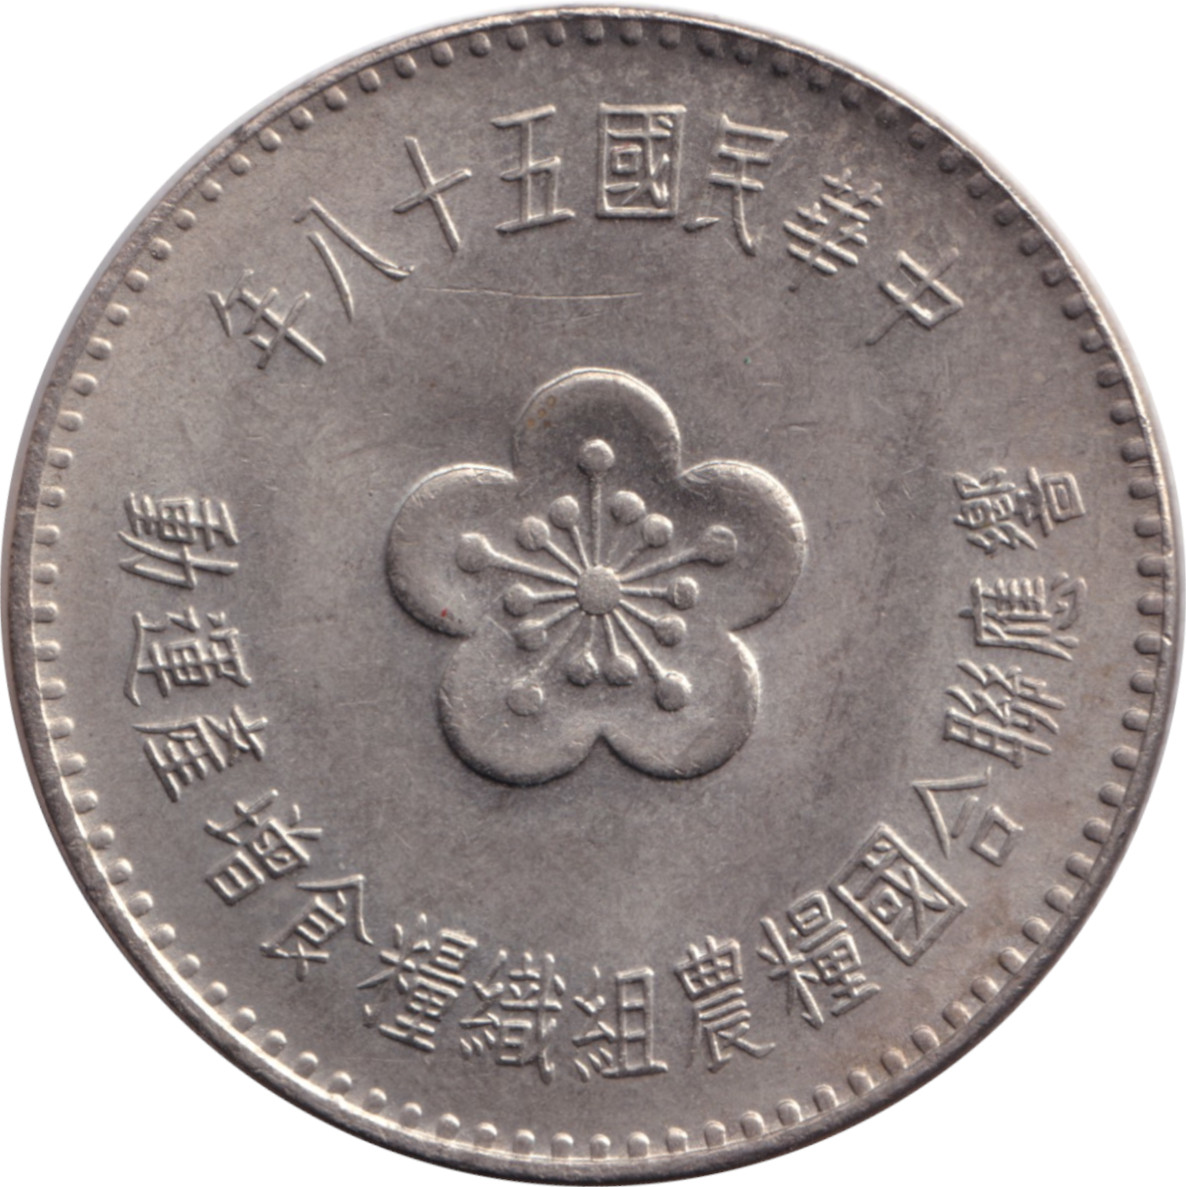 1 yuan - FAO